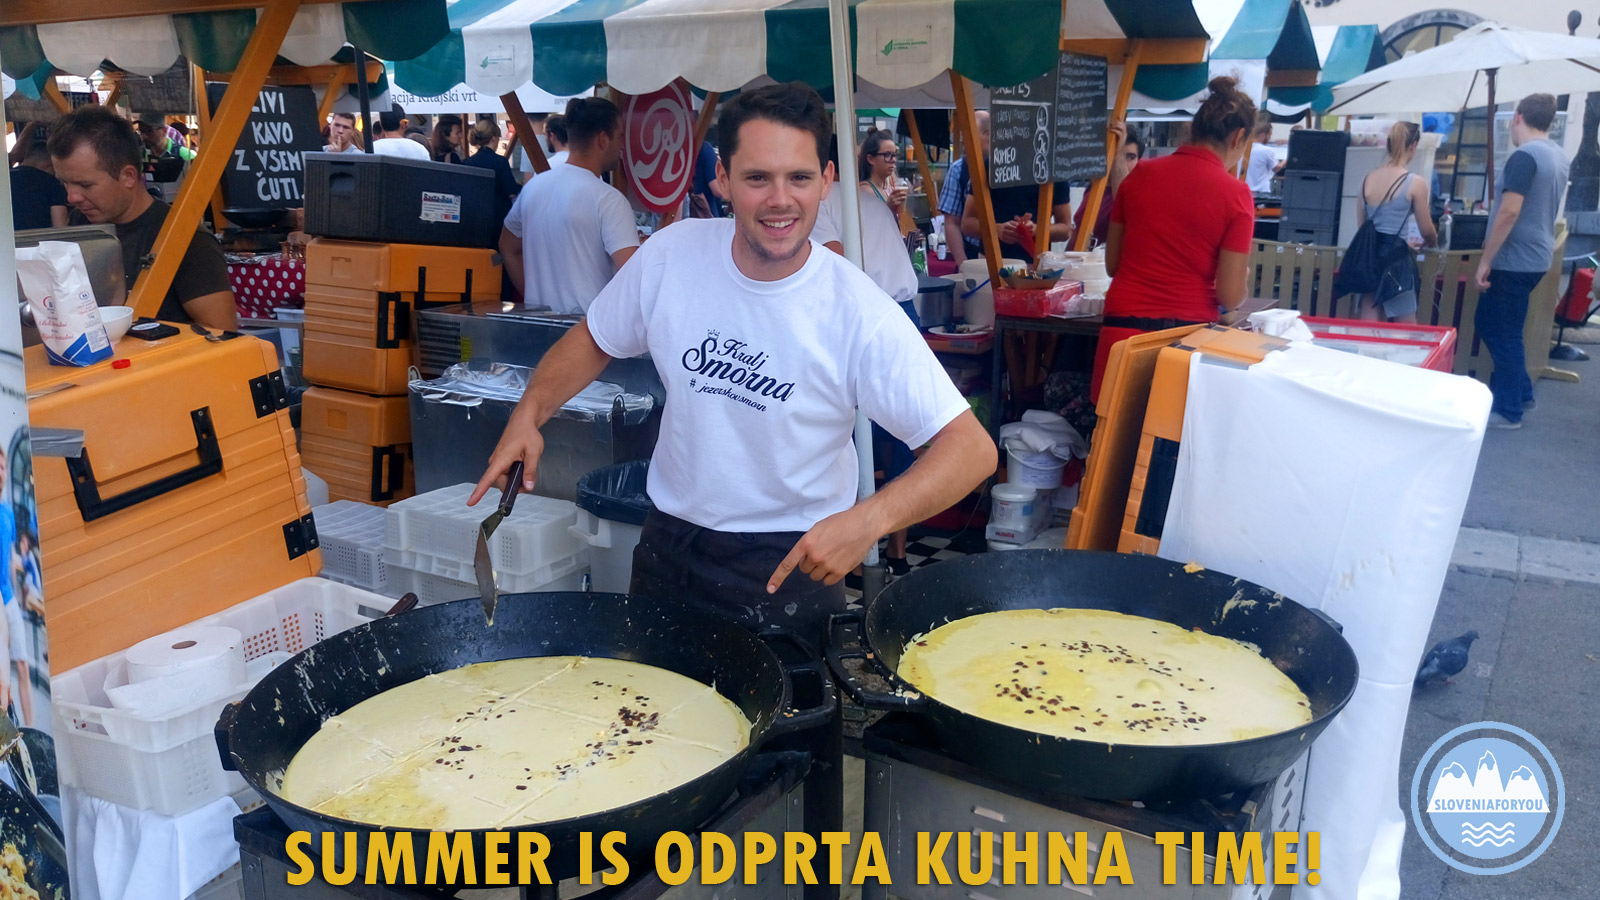 Odprta Kuhna in Ljubljana_Sloveniaforyou